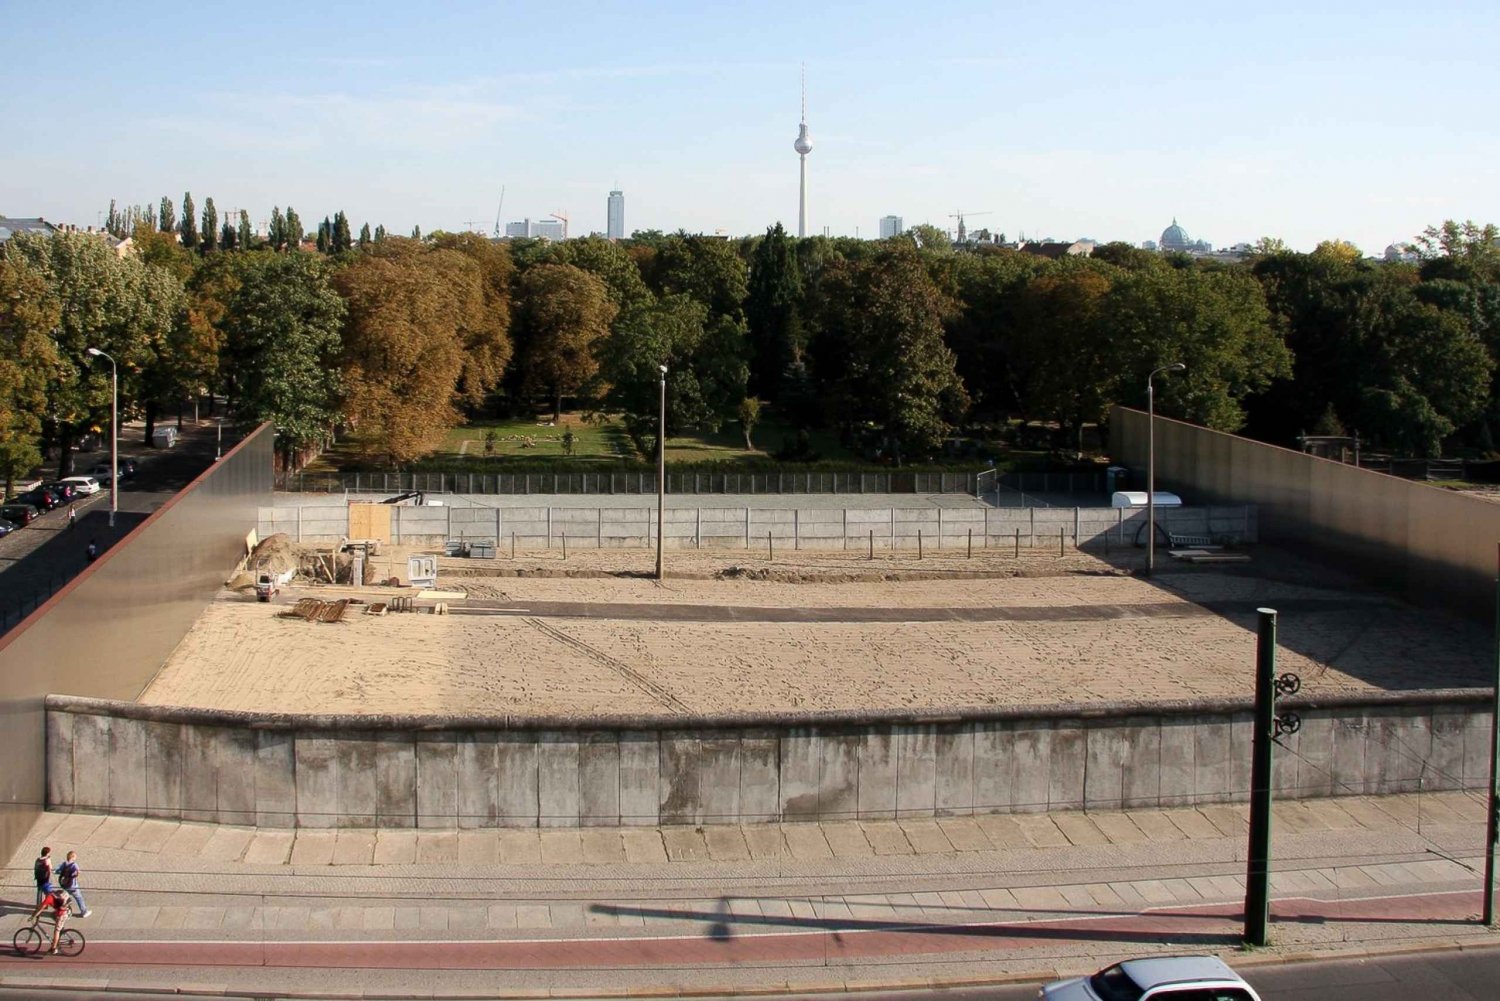 Berlín: Recorrido a pie por el Muro de Berlín y la Guerra Fría